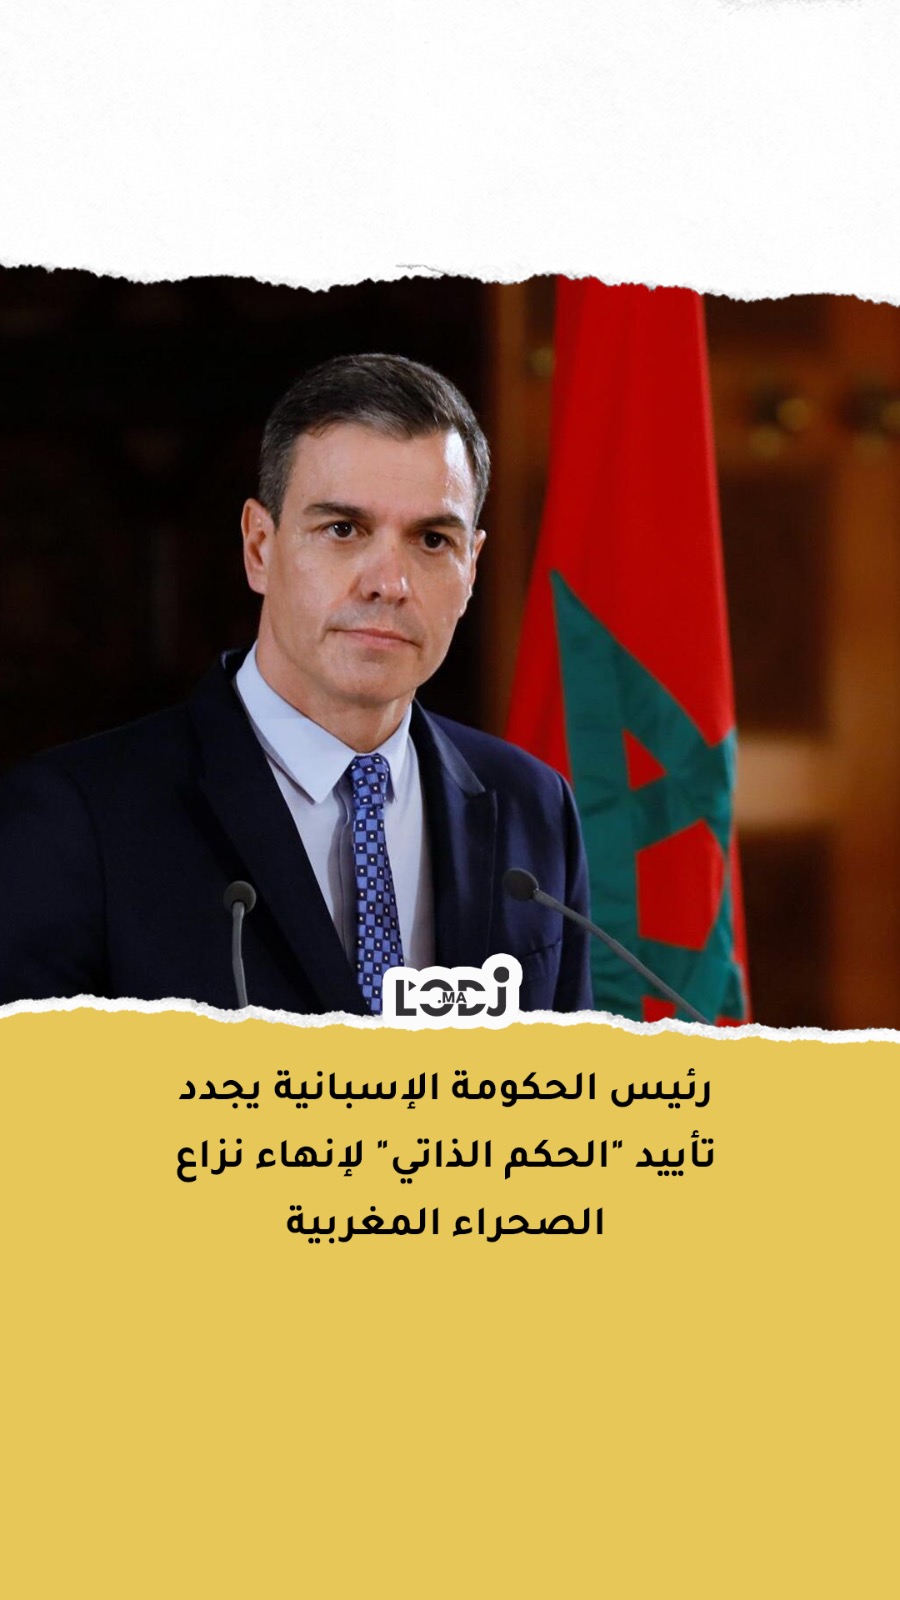 رئيس الحكومة الإسبانية يجدد تأييد "الحكم الذاتي" لإنهاء نزاع الصحراء المغربية